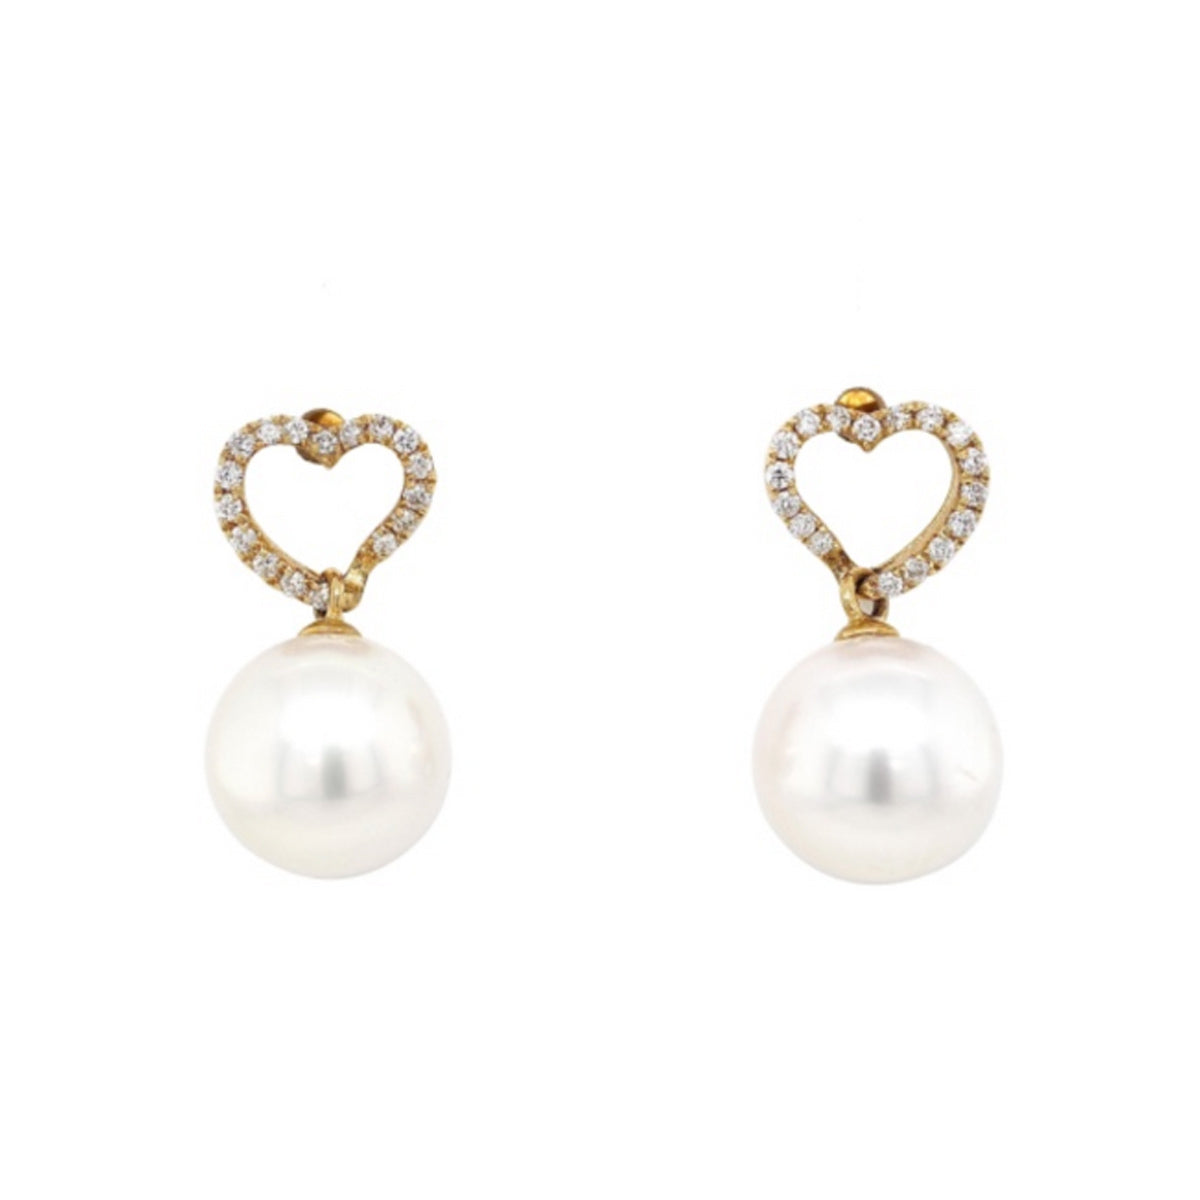 Yoko London South Sea and Diamond Heart Earrings